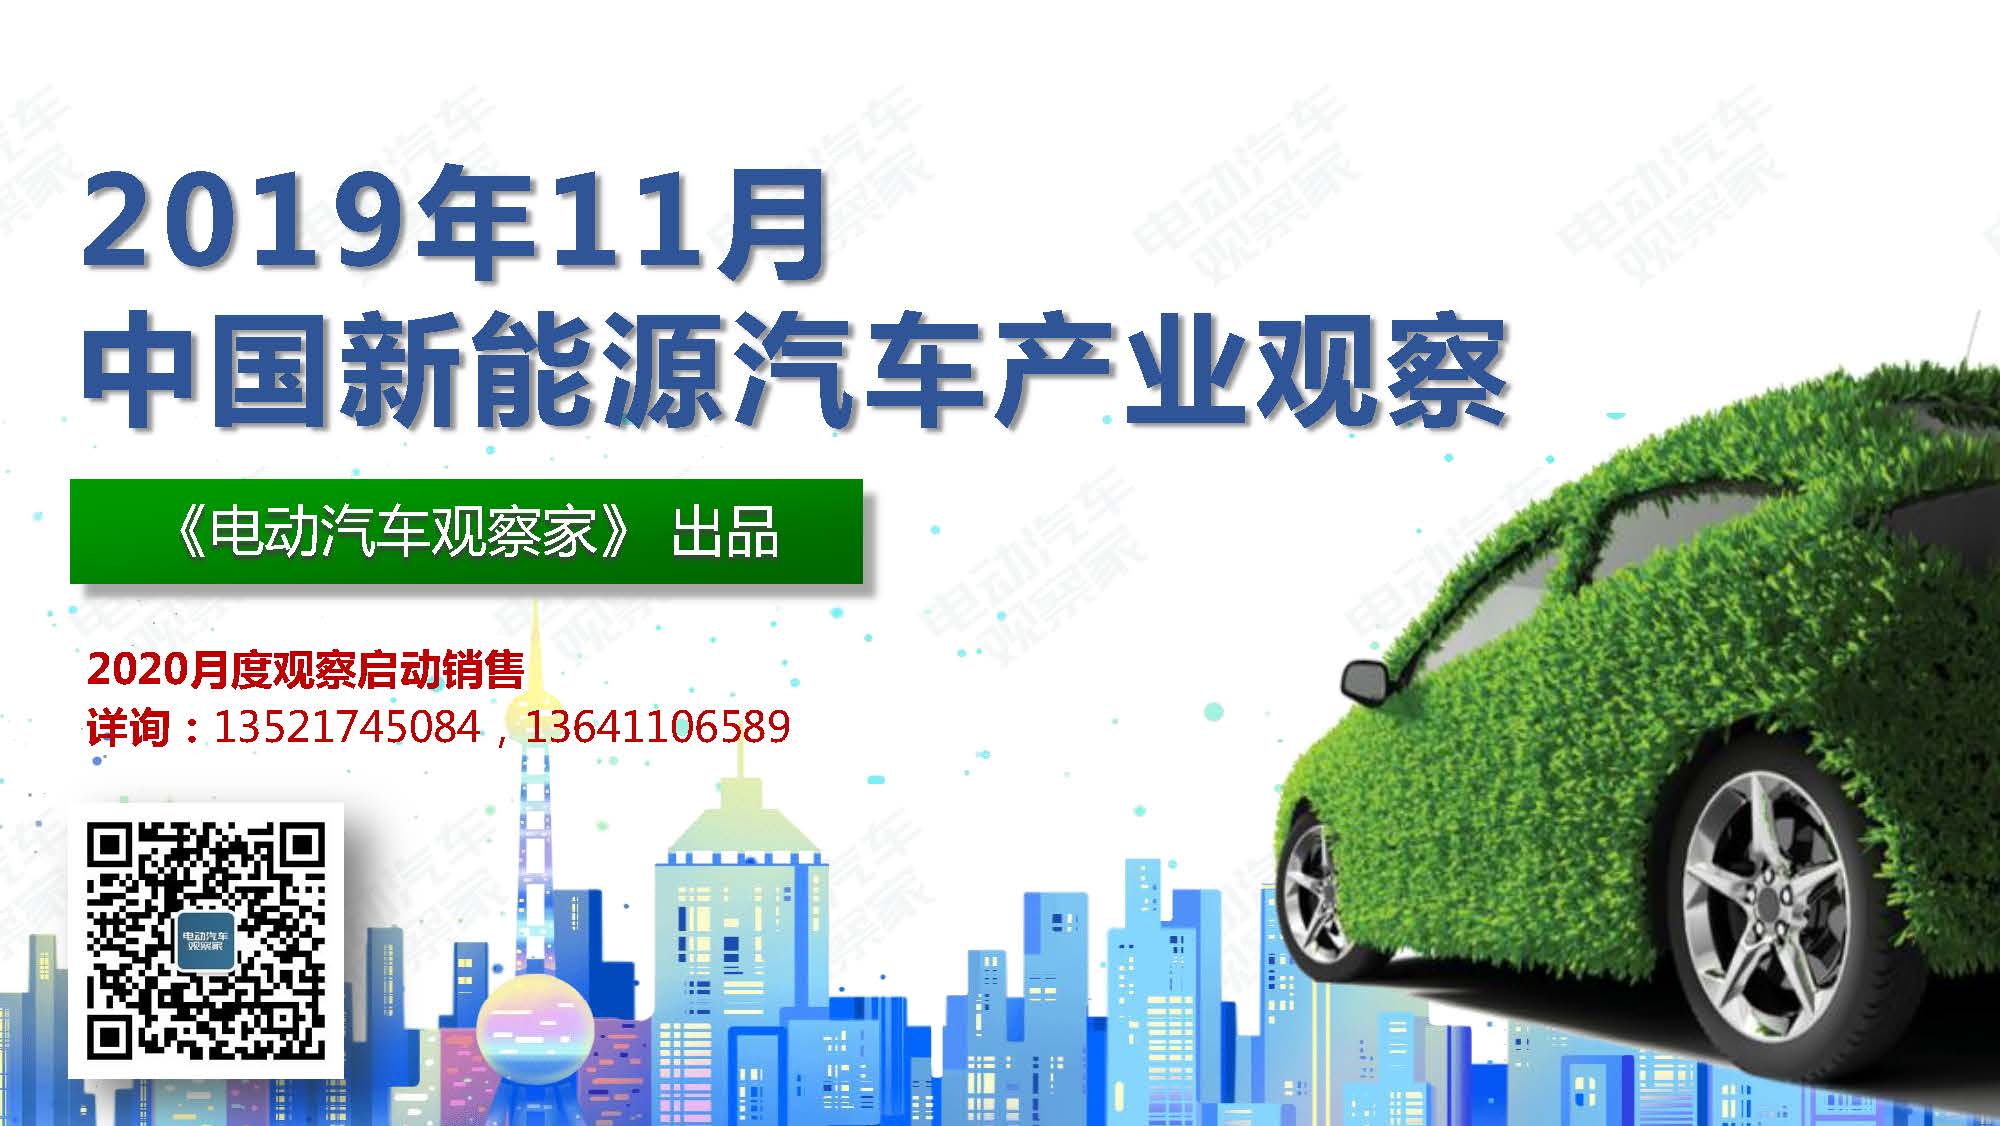 2019年11月中国新能源汽车产业观察_页面_001